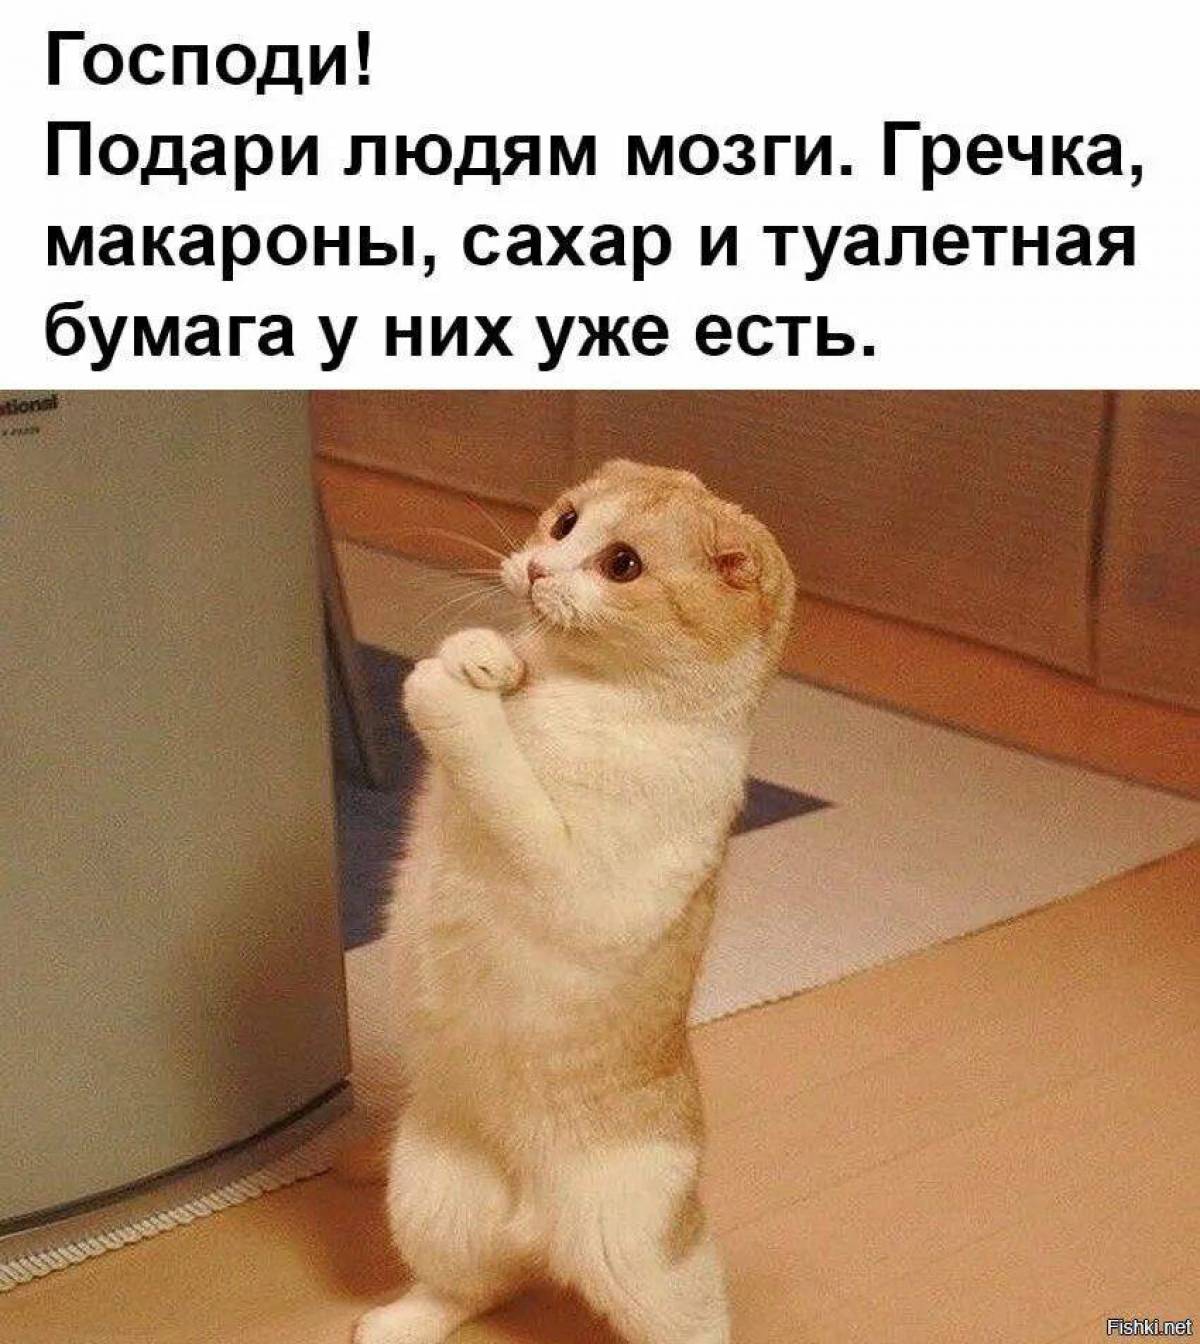 Сделай пожалуйста русский. Котик умоляет. Кот с извинениями. Котик просит прощения. Прикольные картинки с прощением.